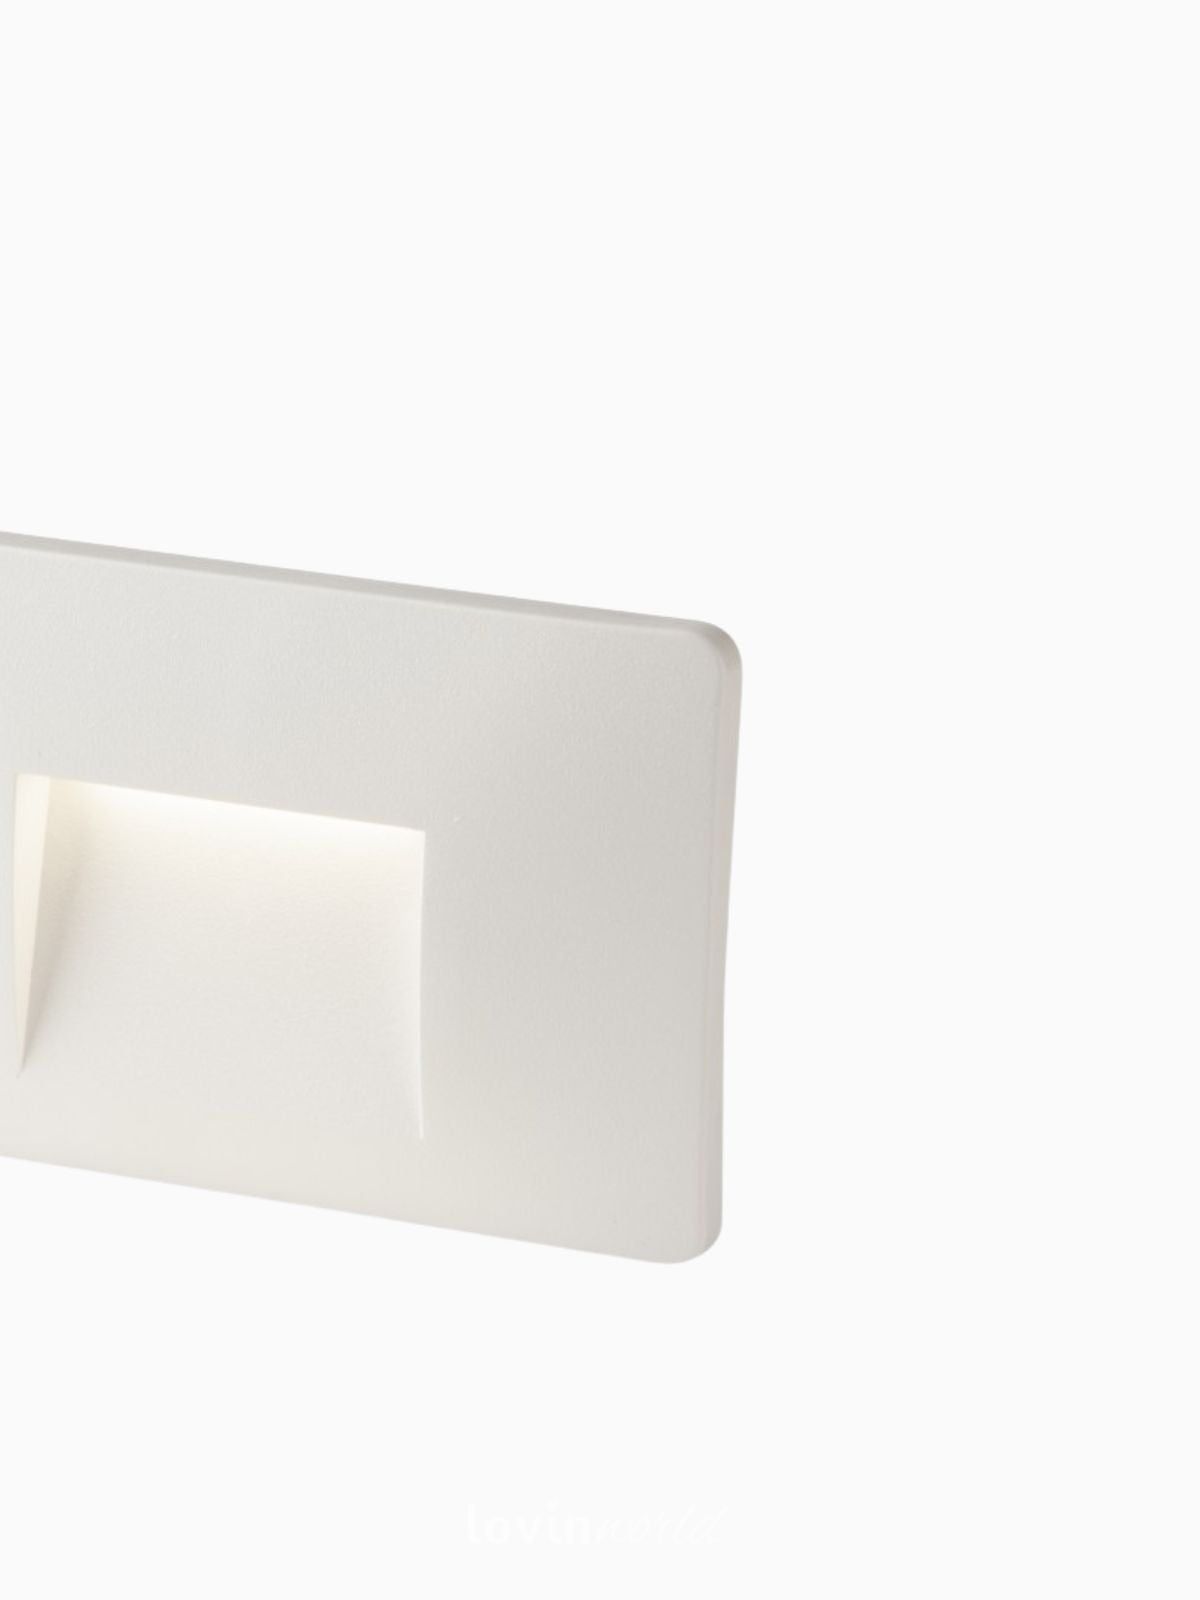 Segnapassi da esterno LED Breen in policarbonato, colore bianco-4